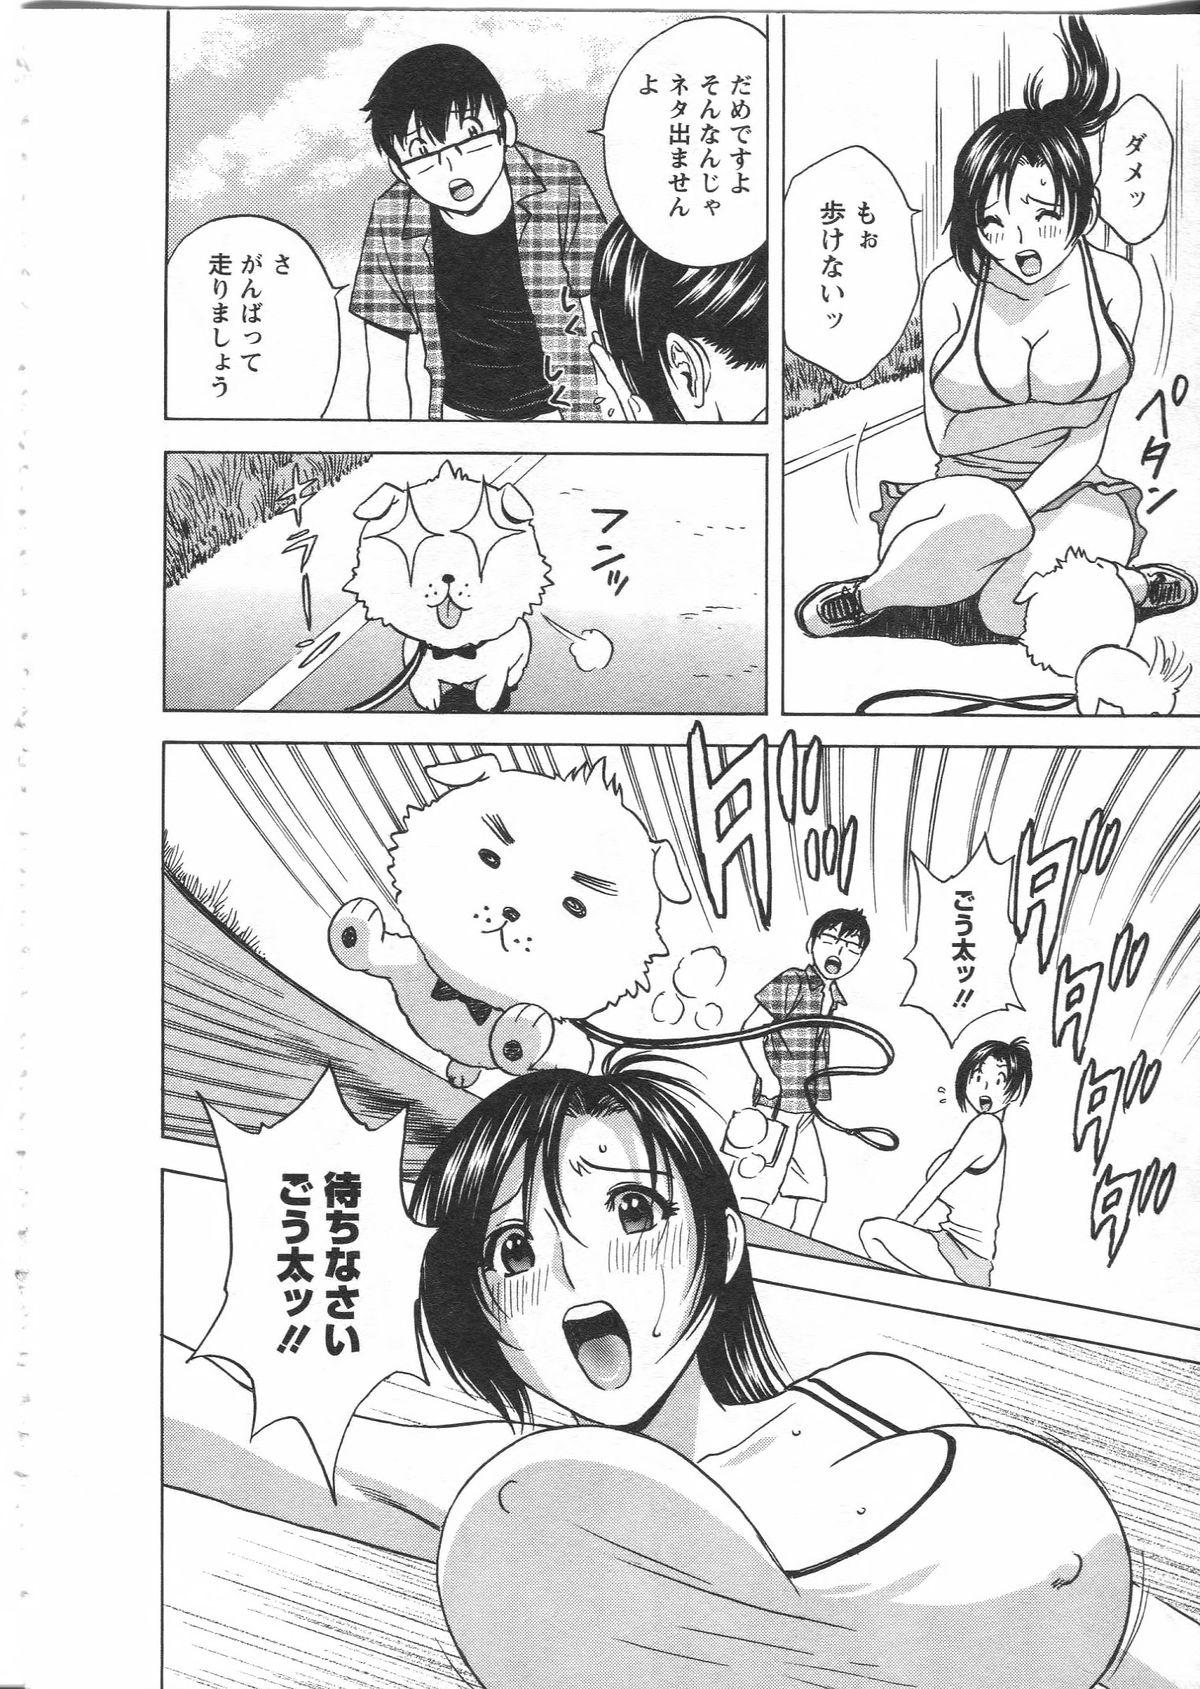 Manga no youna Hitozuma to no Hibi - Days with Married Women such as Comics. 142